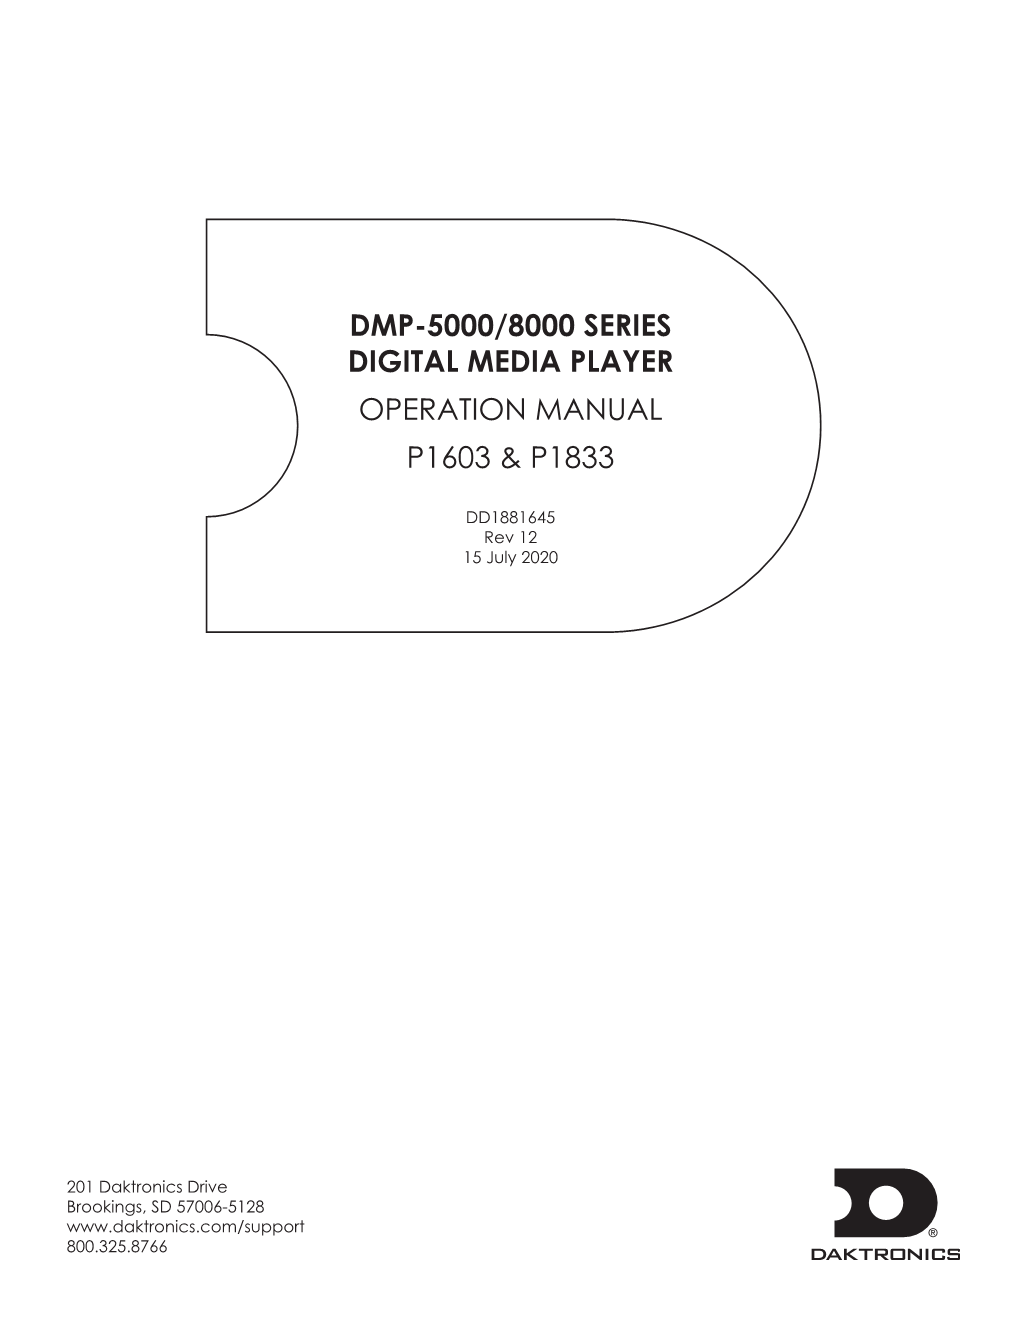 Dmp-5000/8000 Series Digital Media Player Operation Manual P1603 & P1833